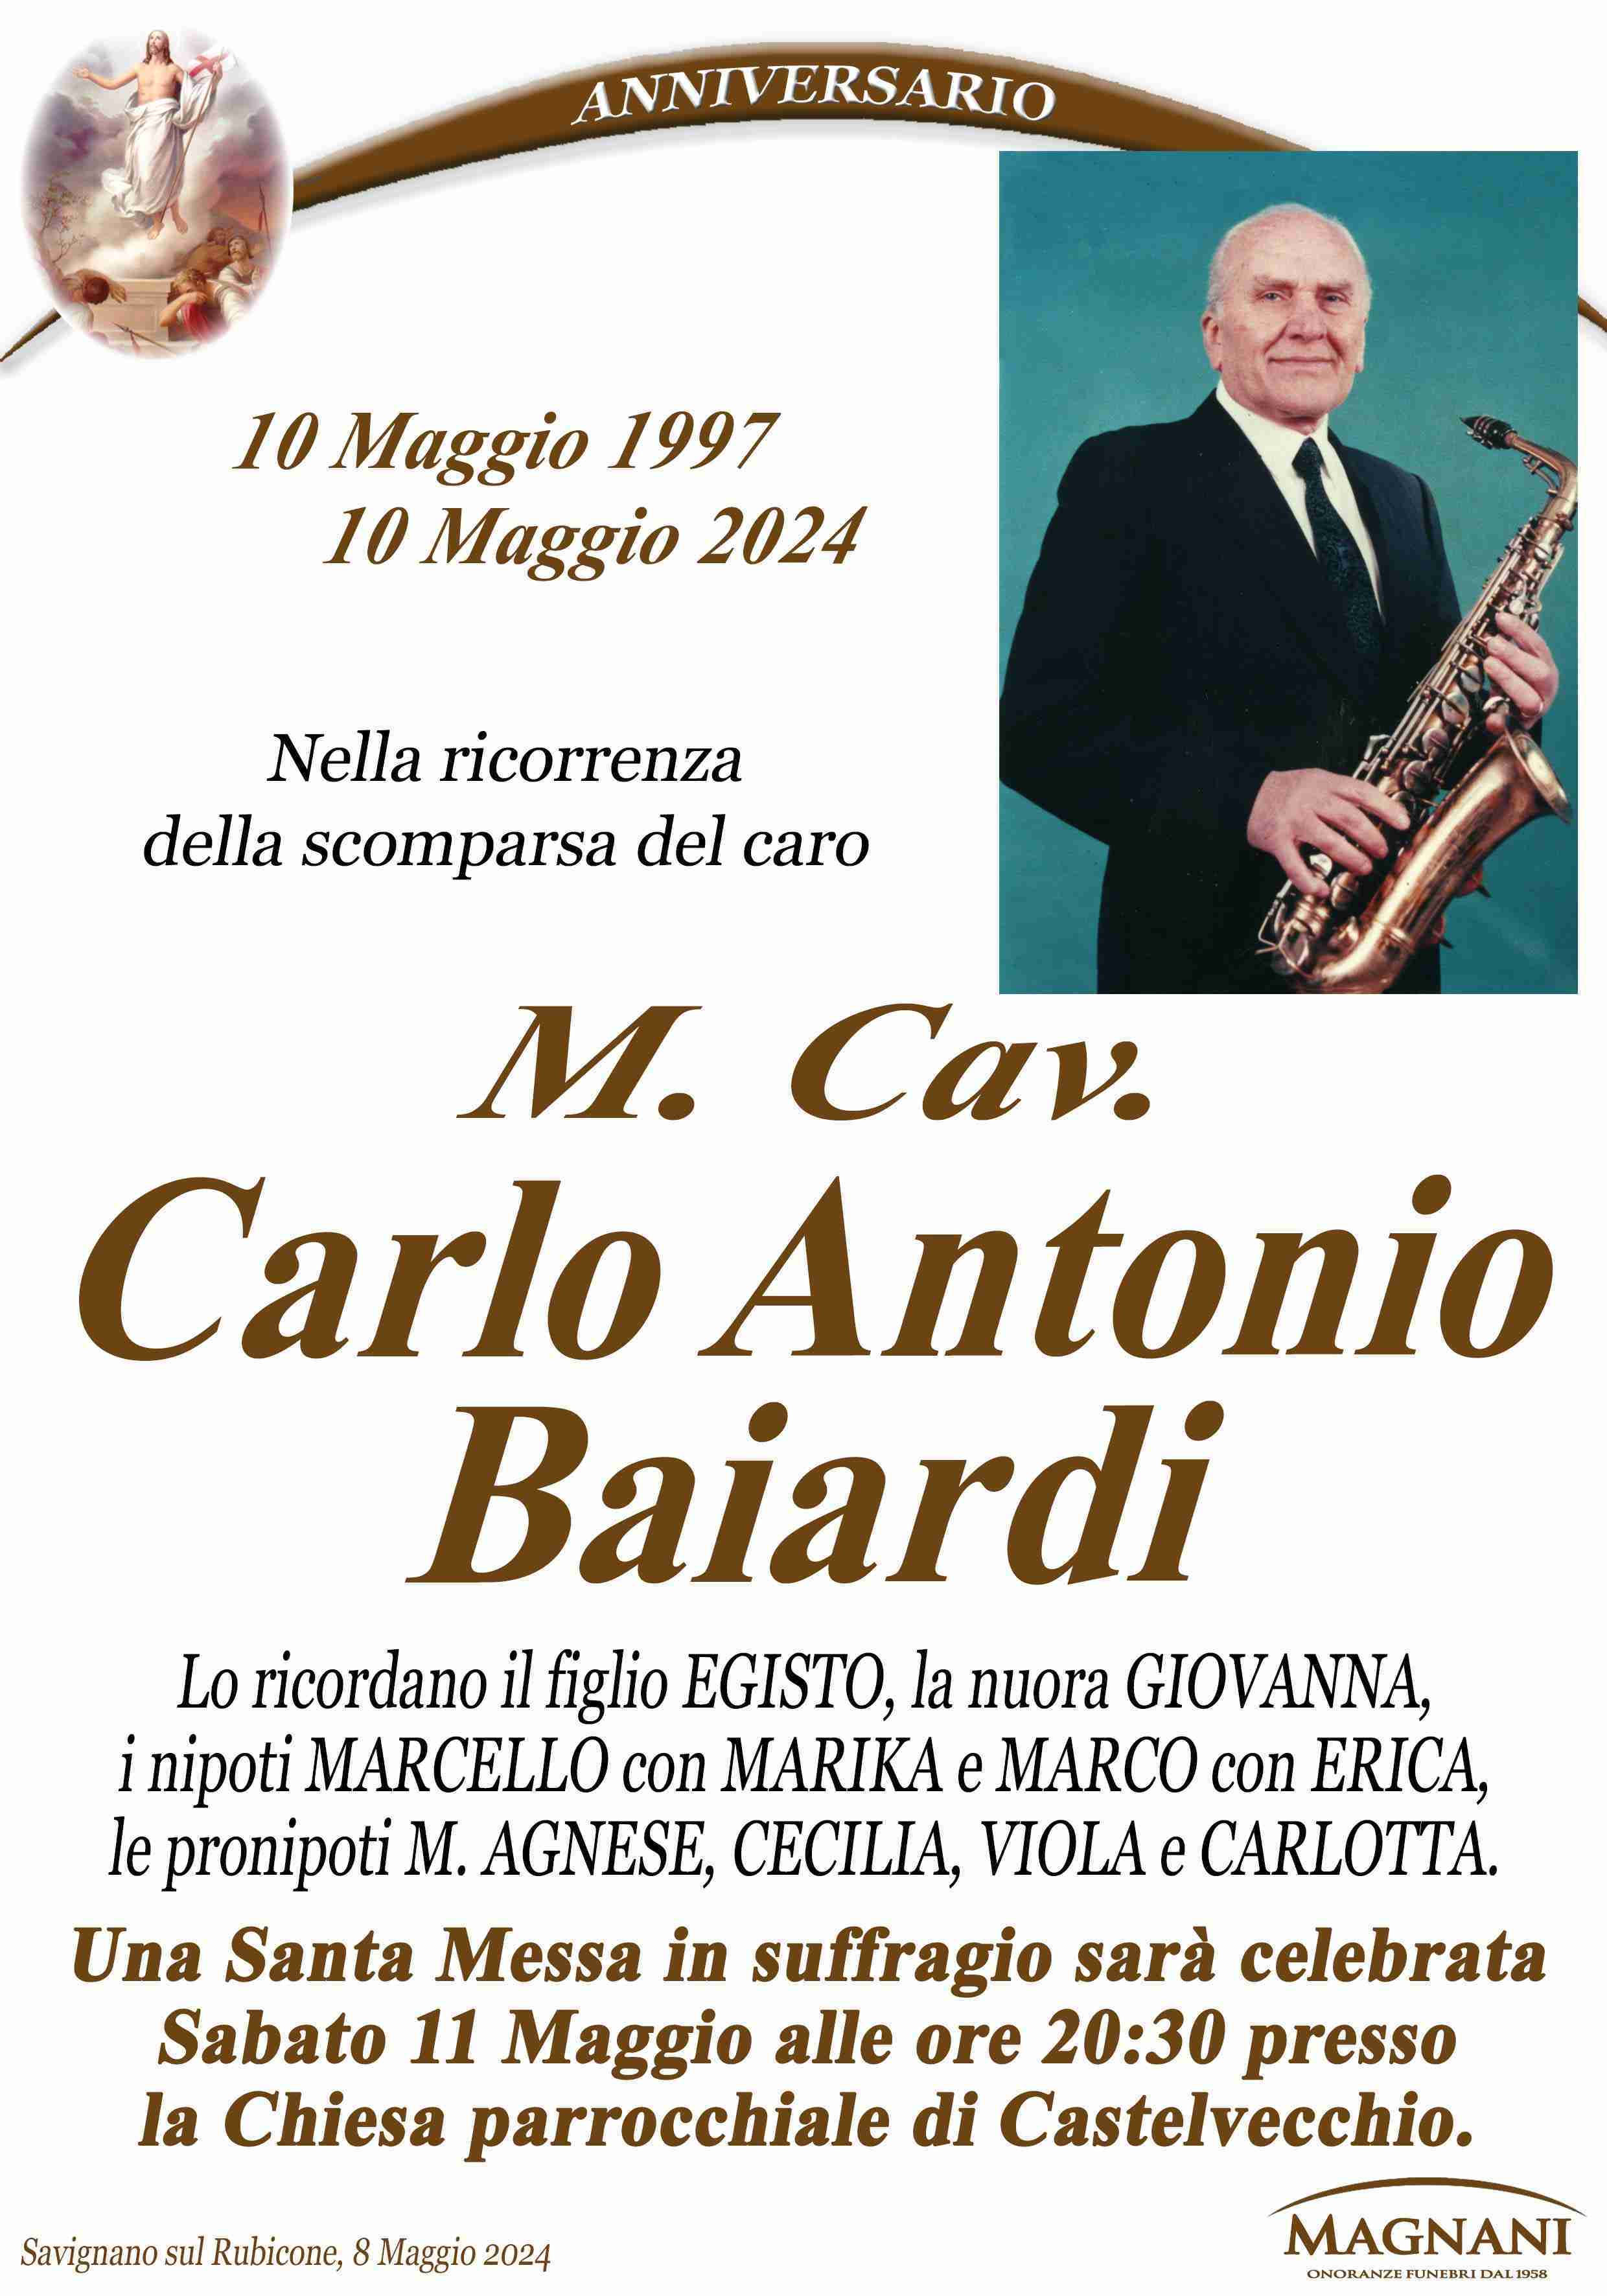 Carlo Antonio Baiardi